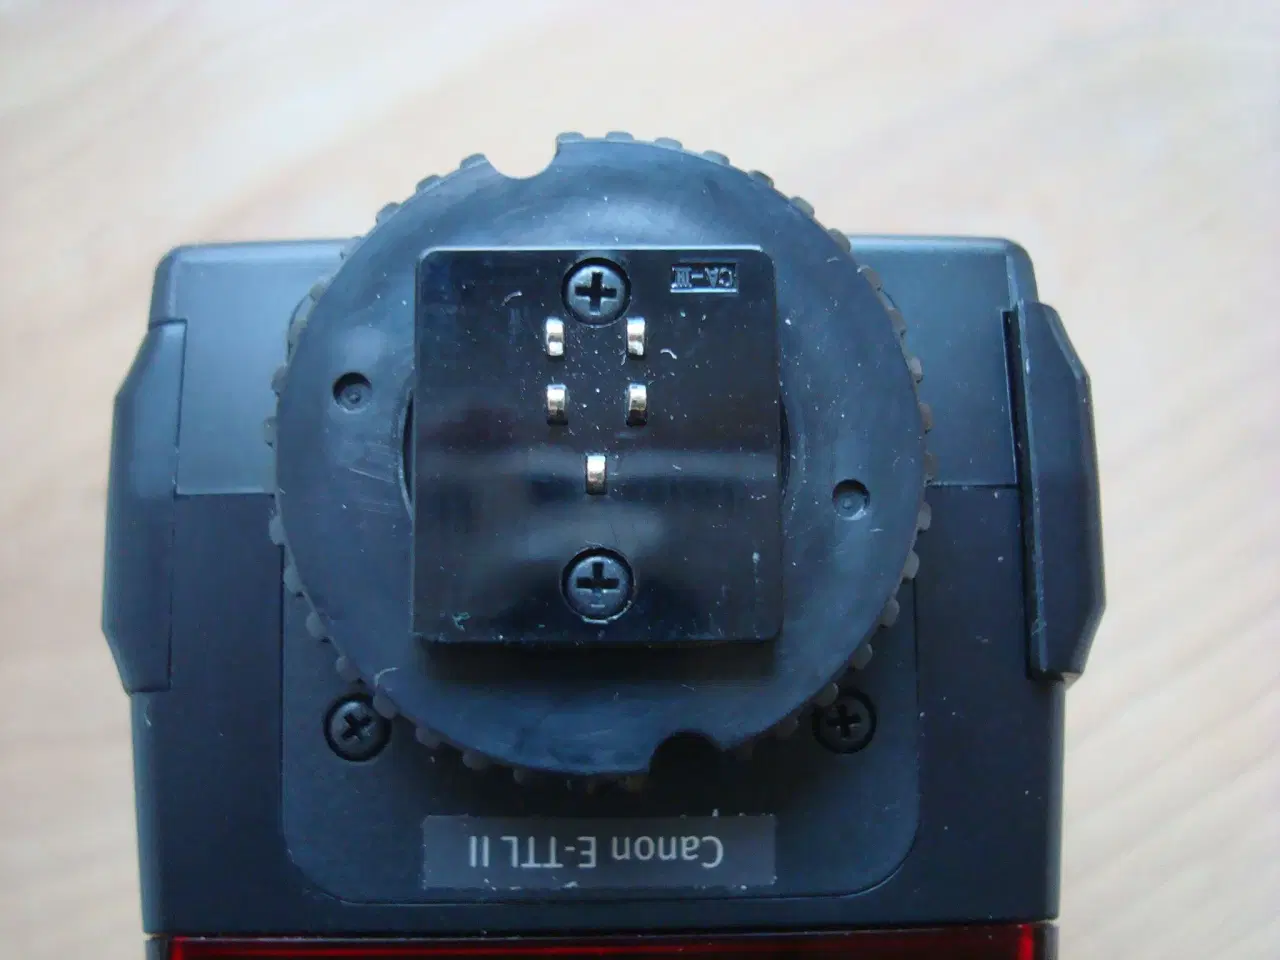 Billede 9 - Digital dedikeret flash til Canon spejlr